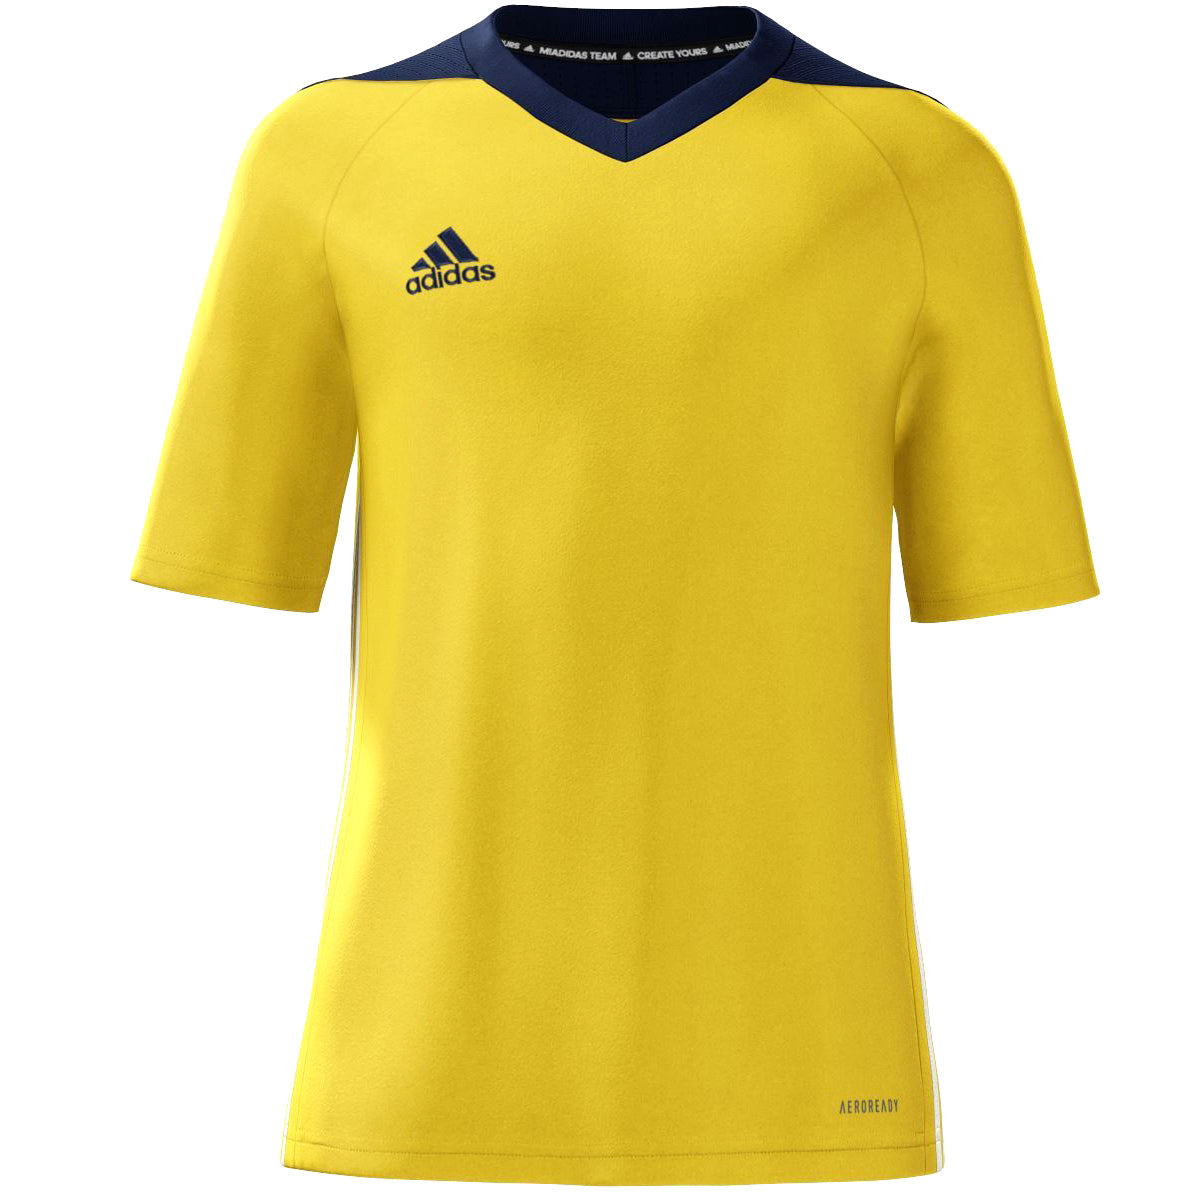 Adidas TIRO 17 | Yellow Jersey Jersey Adidas Yellow Youth Small 